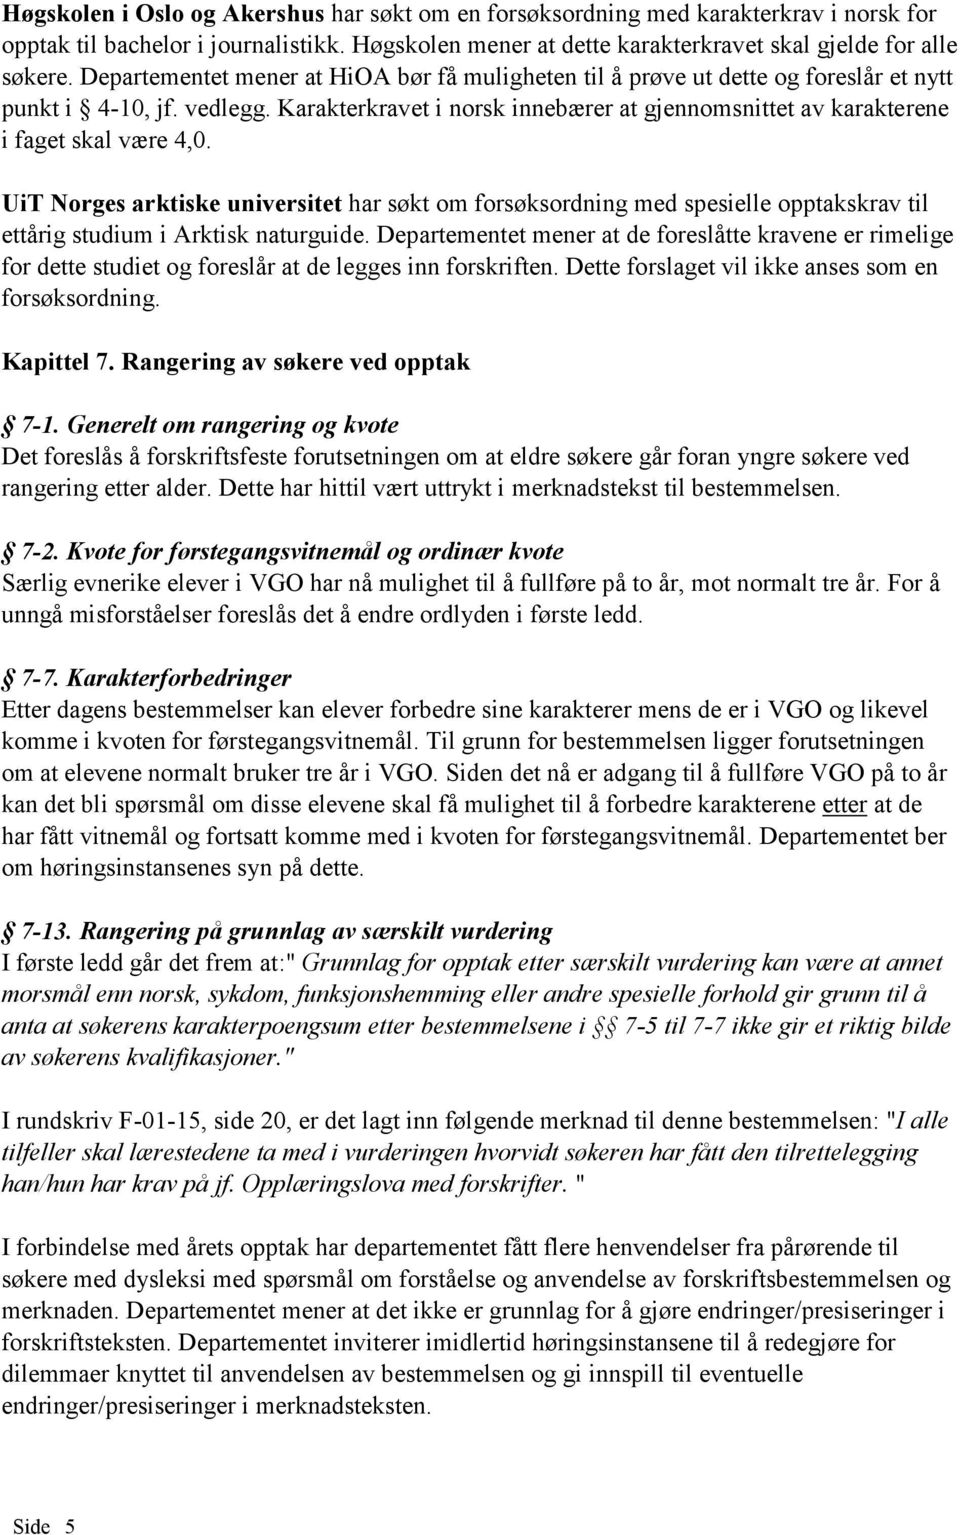 Karakterkravet i norsk innebærer at gjennomsnittet av karakterene i faget skal være 4,0.